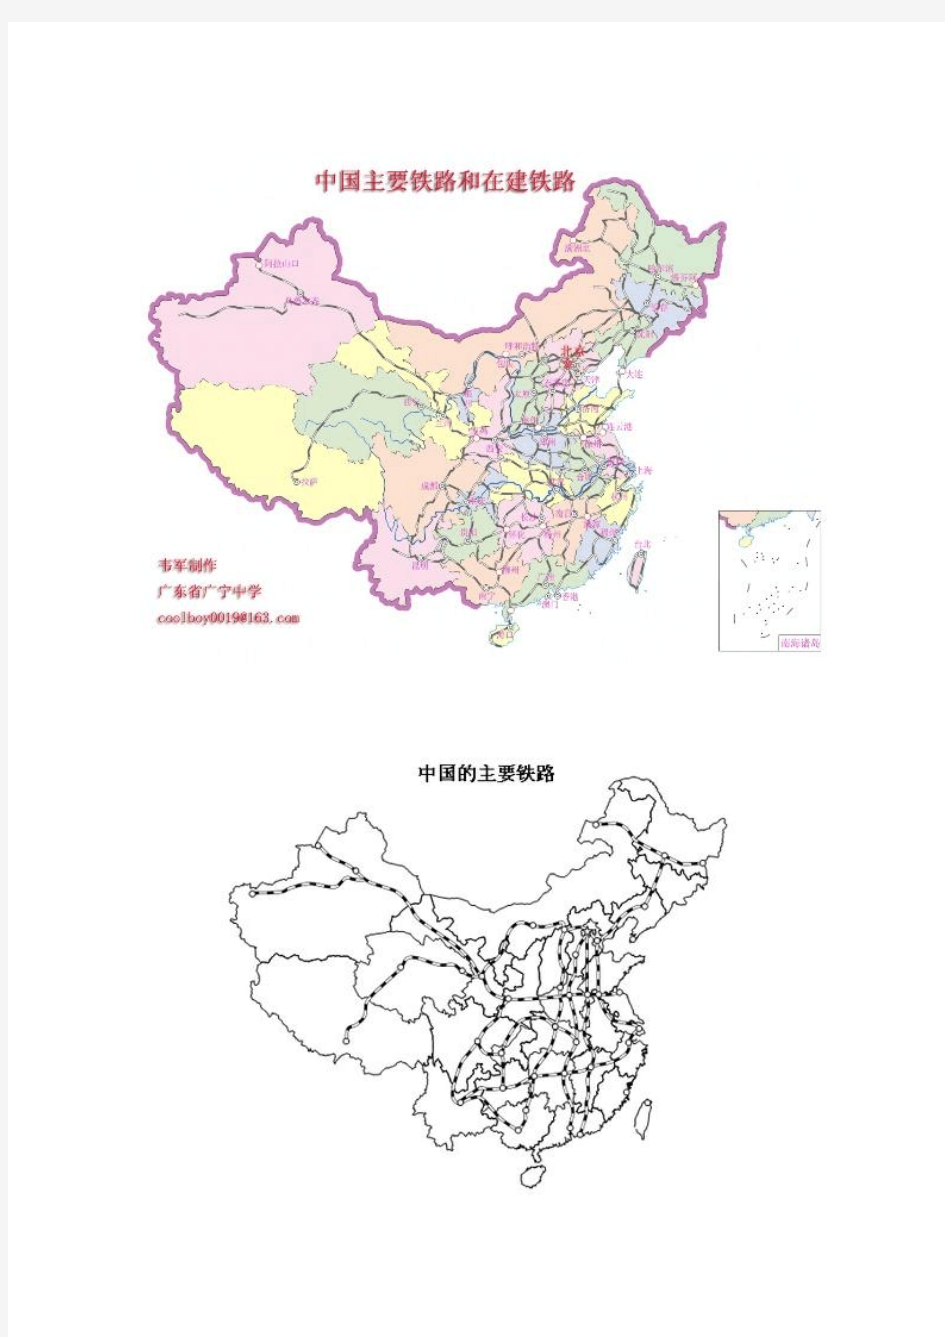 中国最主要的铁路线